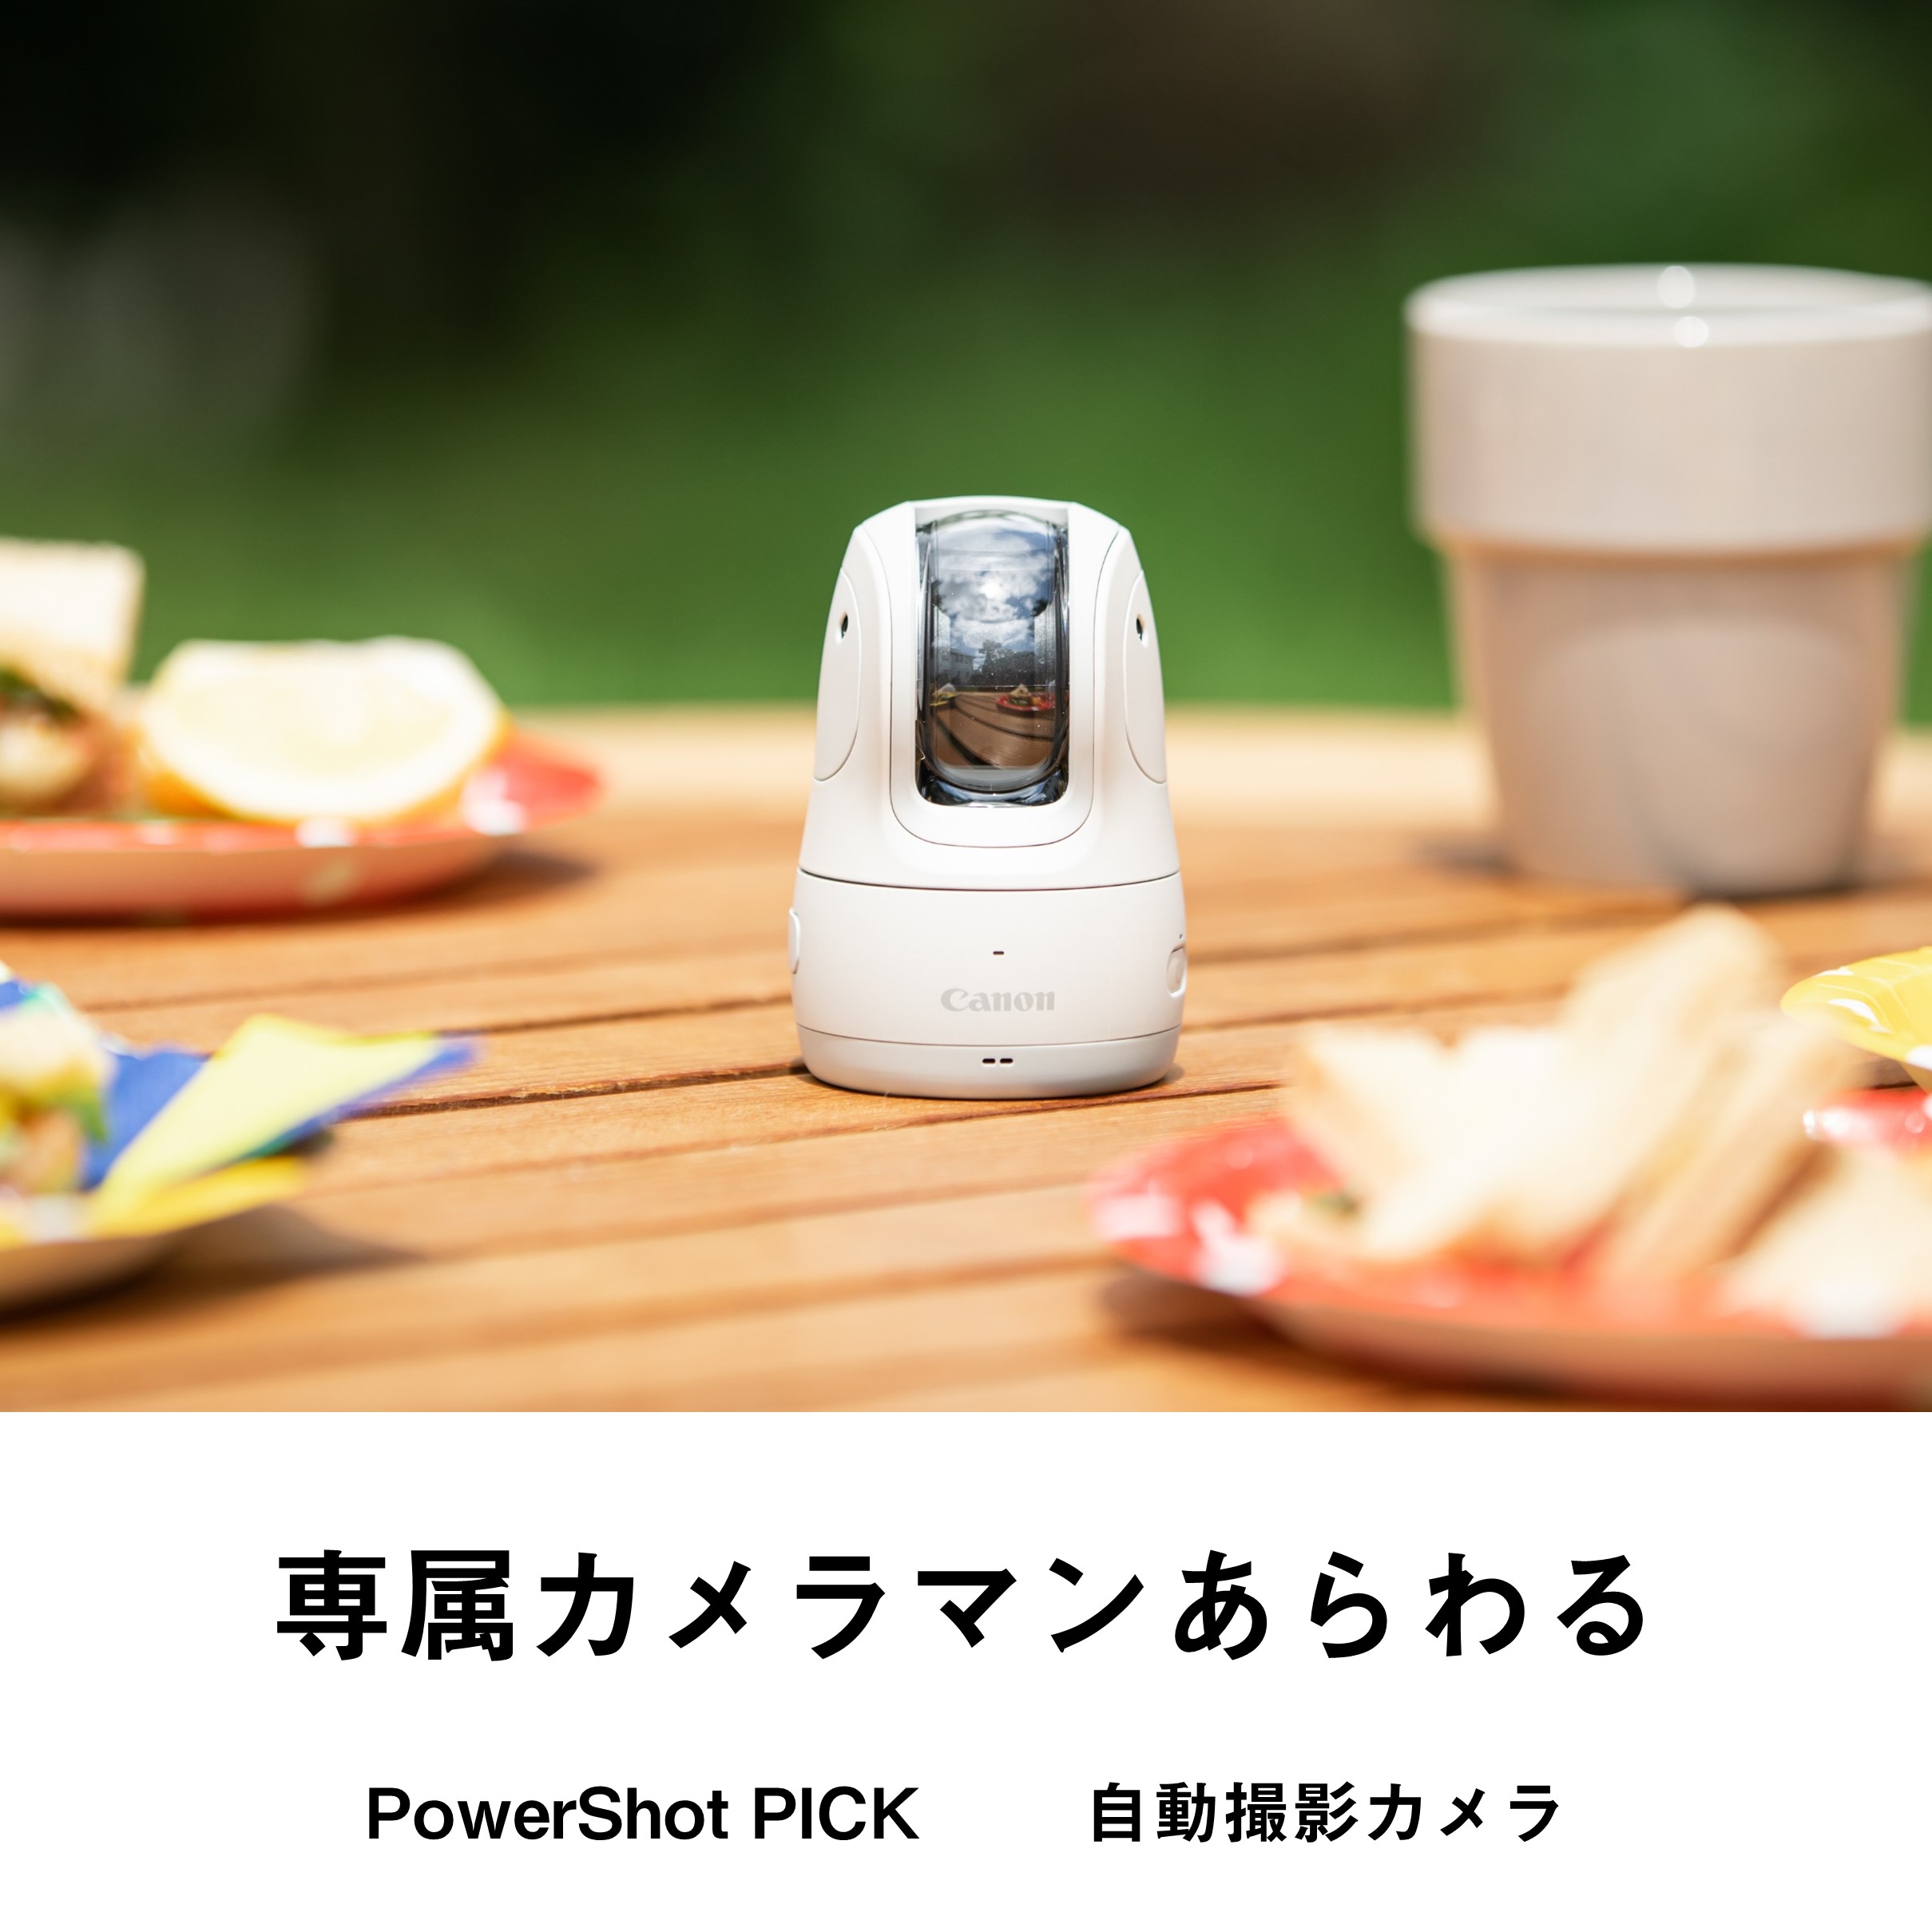 PowerShot PICK / 自動撮影カメラ